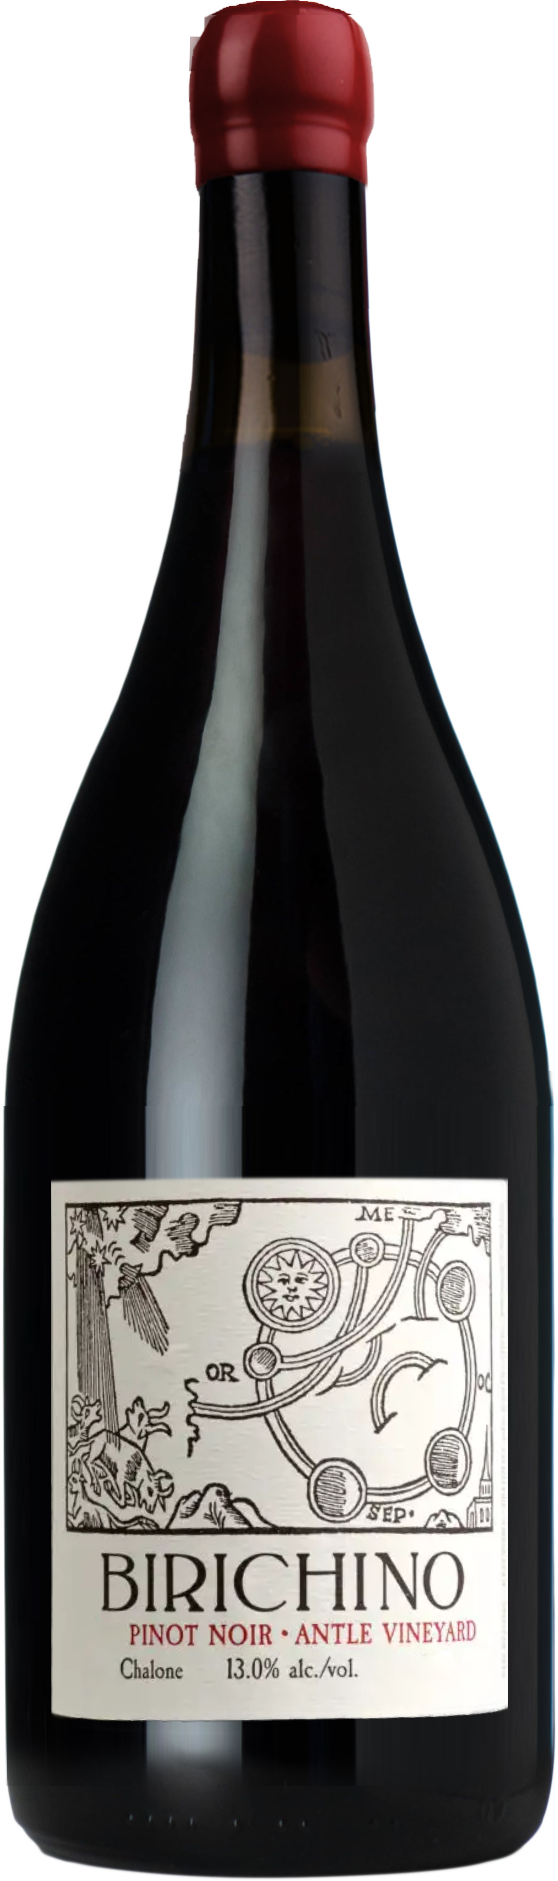 Birichino Antle Pinot Noir 2016 (1500ml)